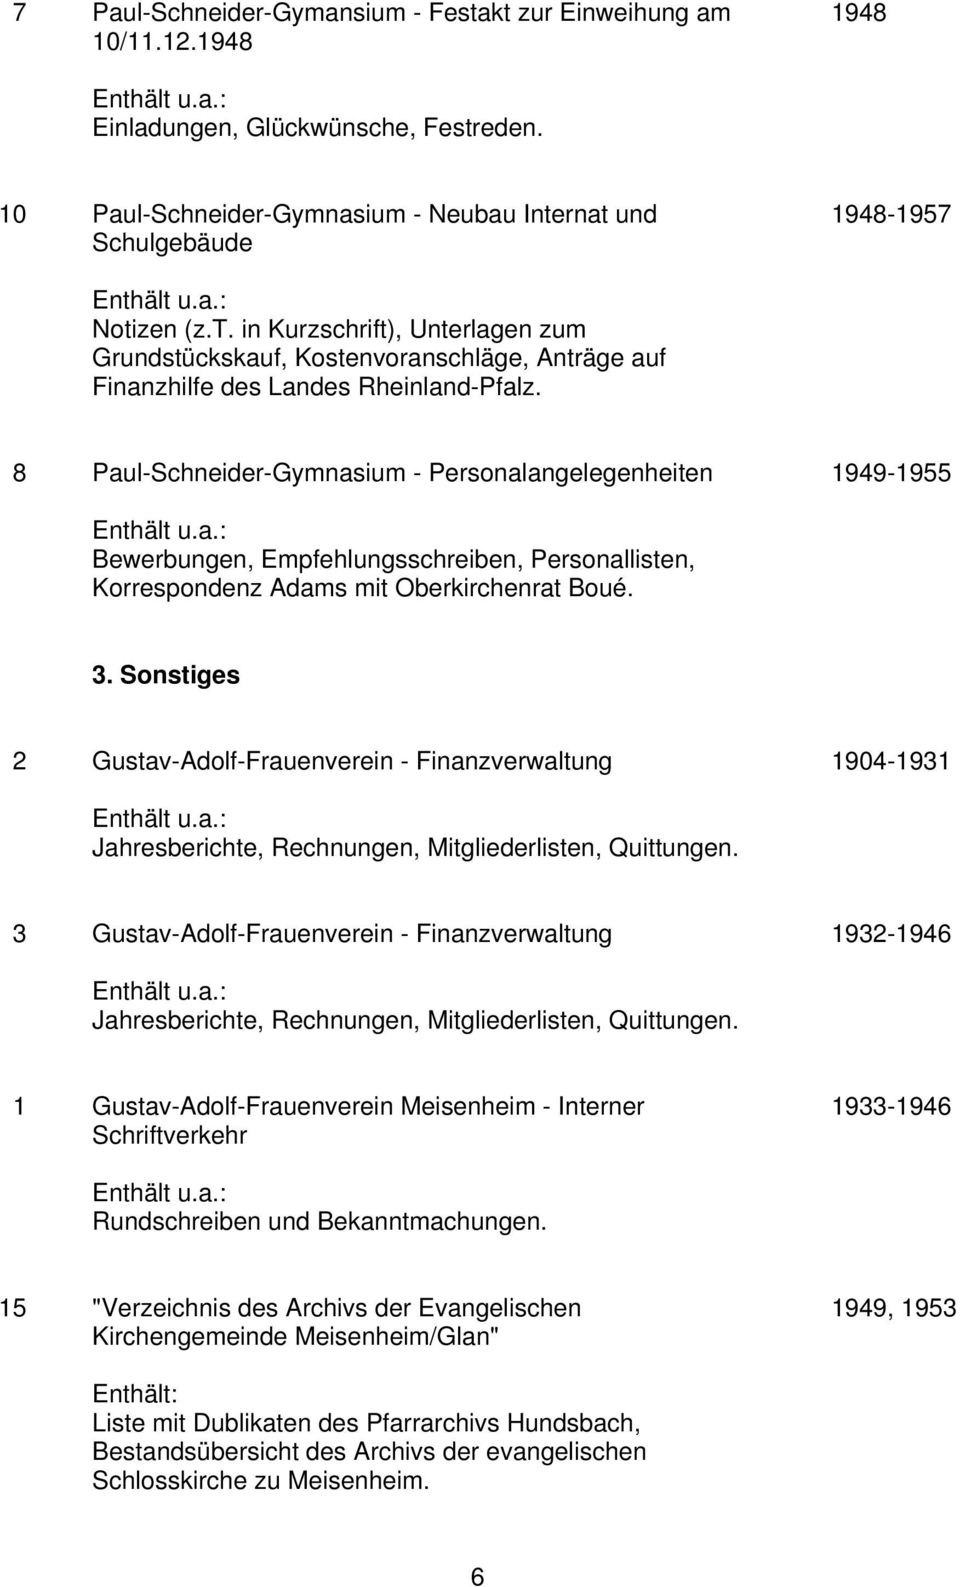 Sonstiges 2 Gustav-Adolf-Frauenverein - Finanzverwaltung 1904-1931 Jahresberichte, Rechnungen, Mitgliederlisten, Quittungen.